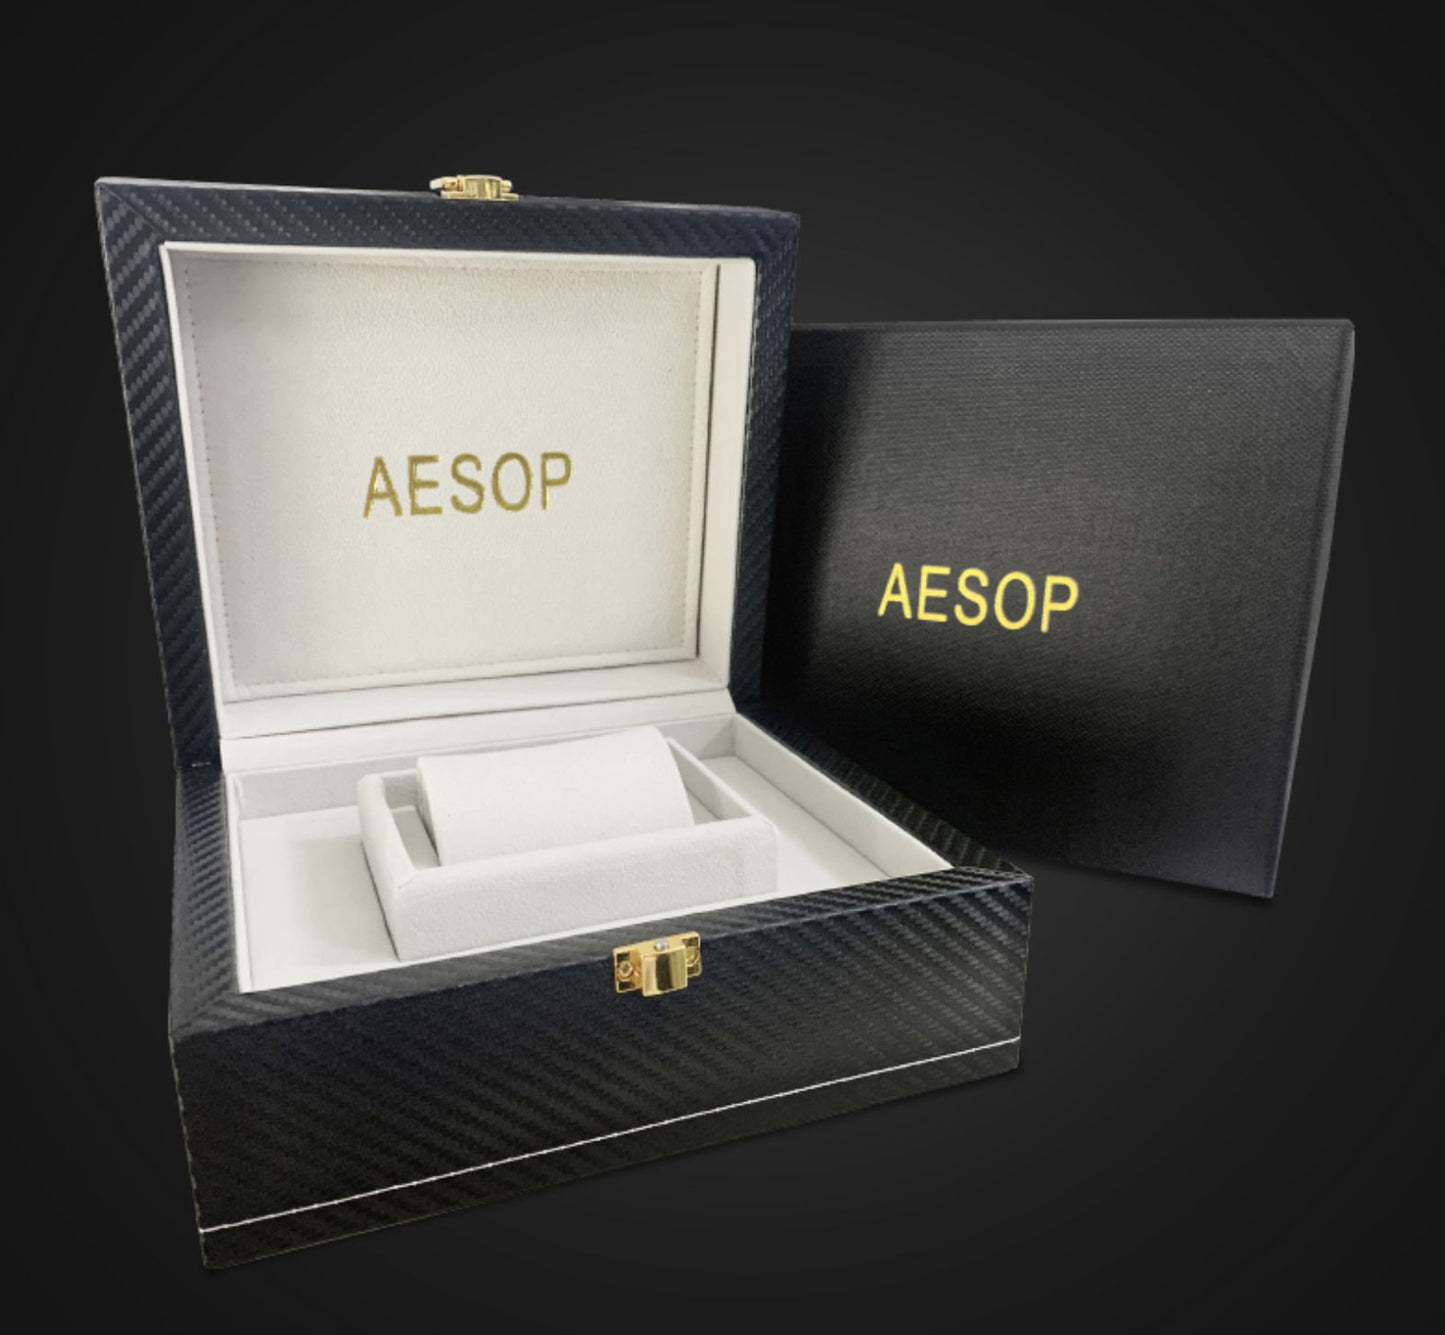 AESOP機械式腕時計 トゥールビヨンシリーズ-7040g/サンライトシャドウ